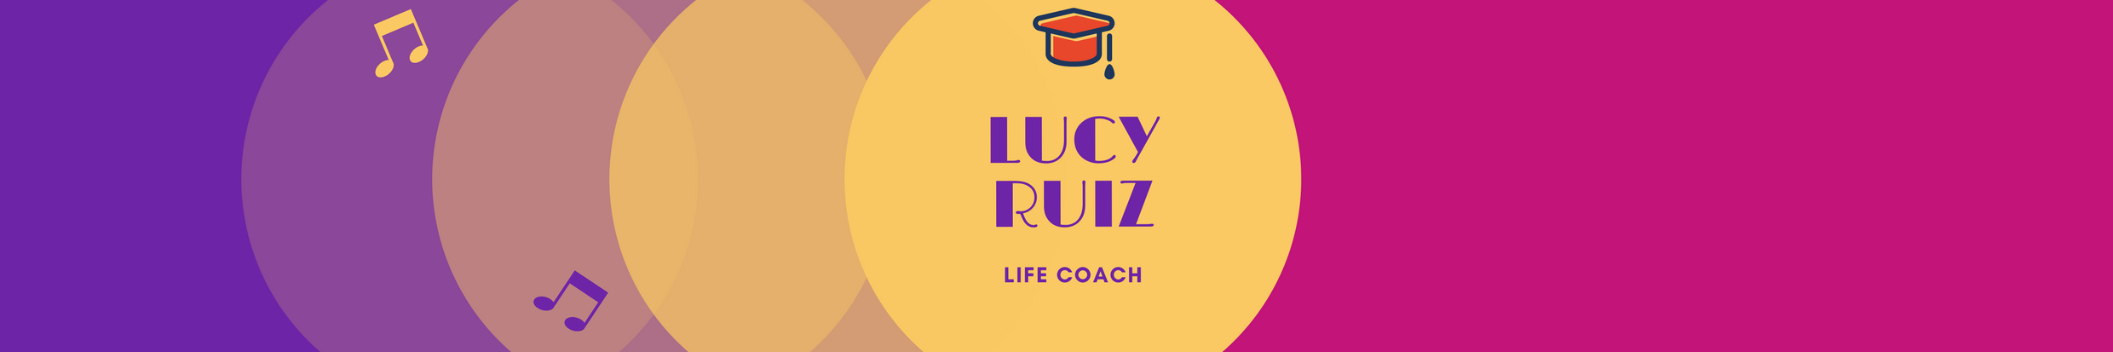 LUCY RUIZ